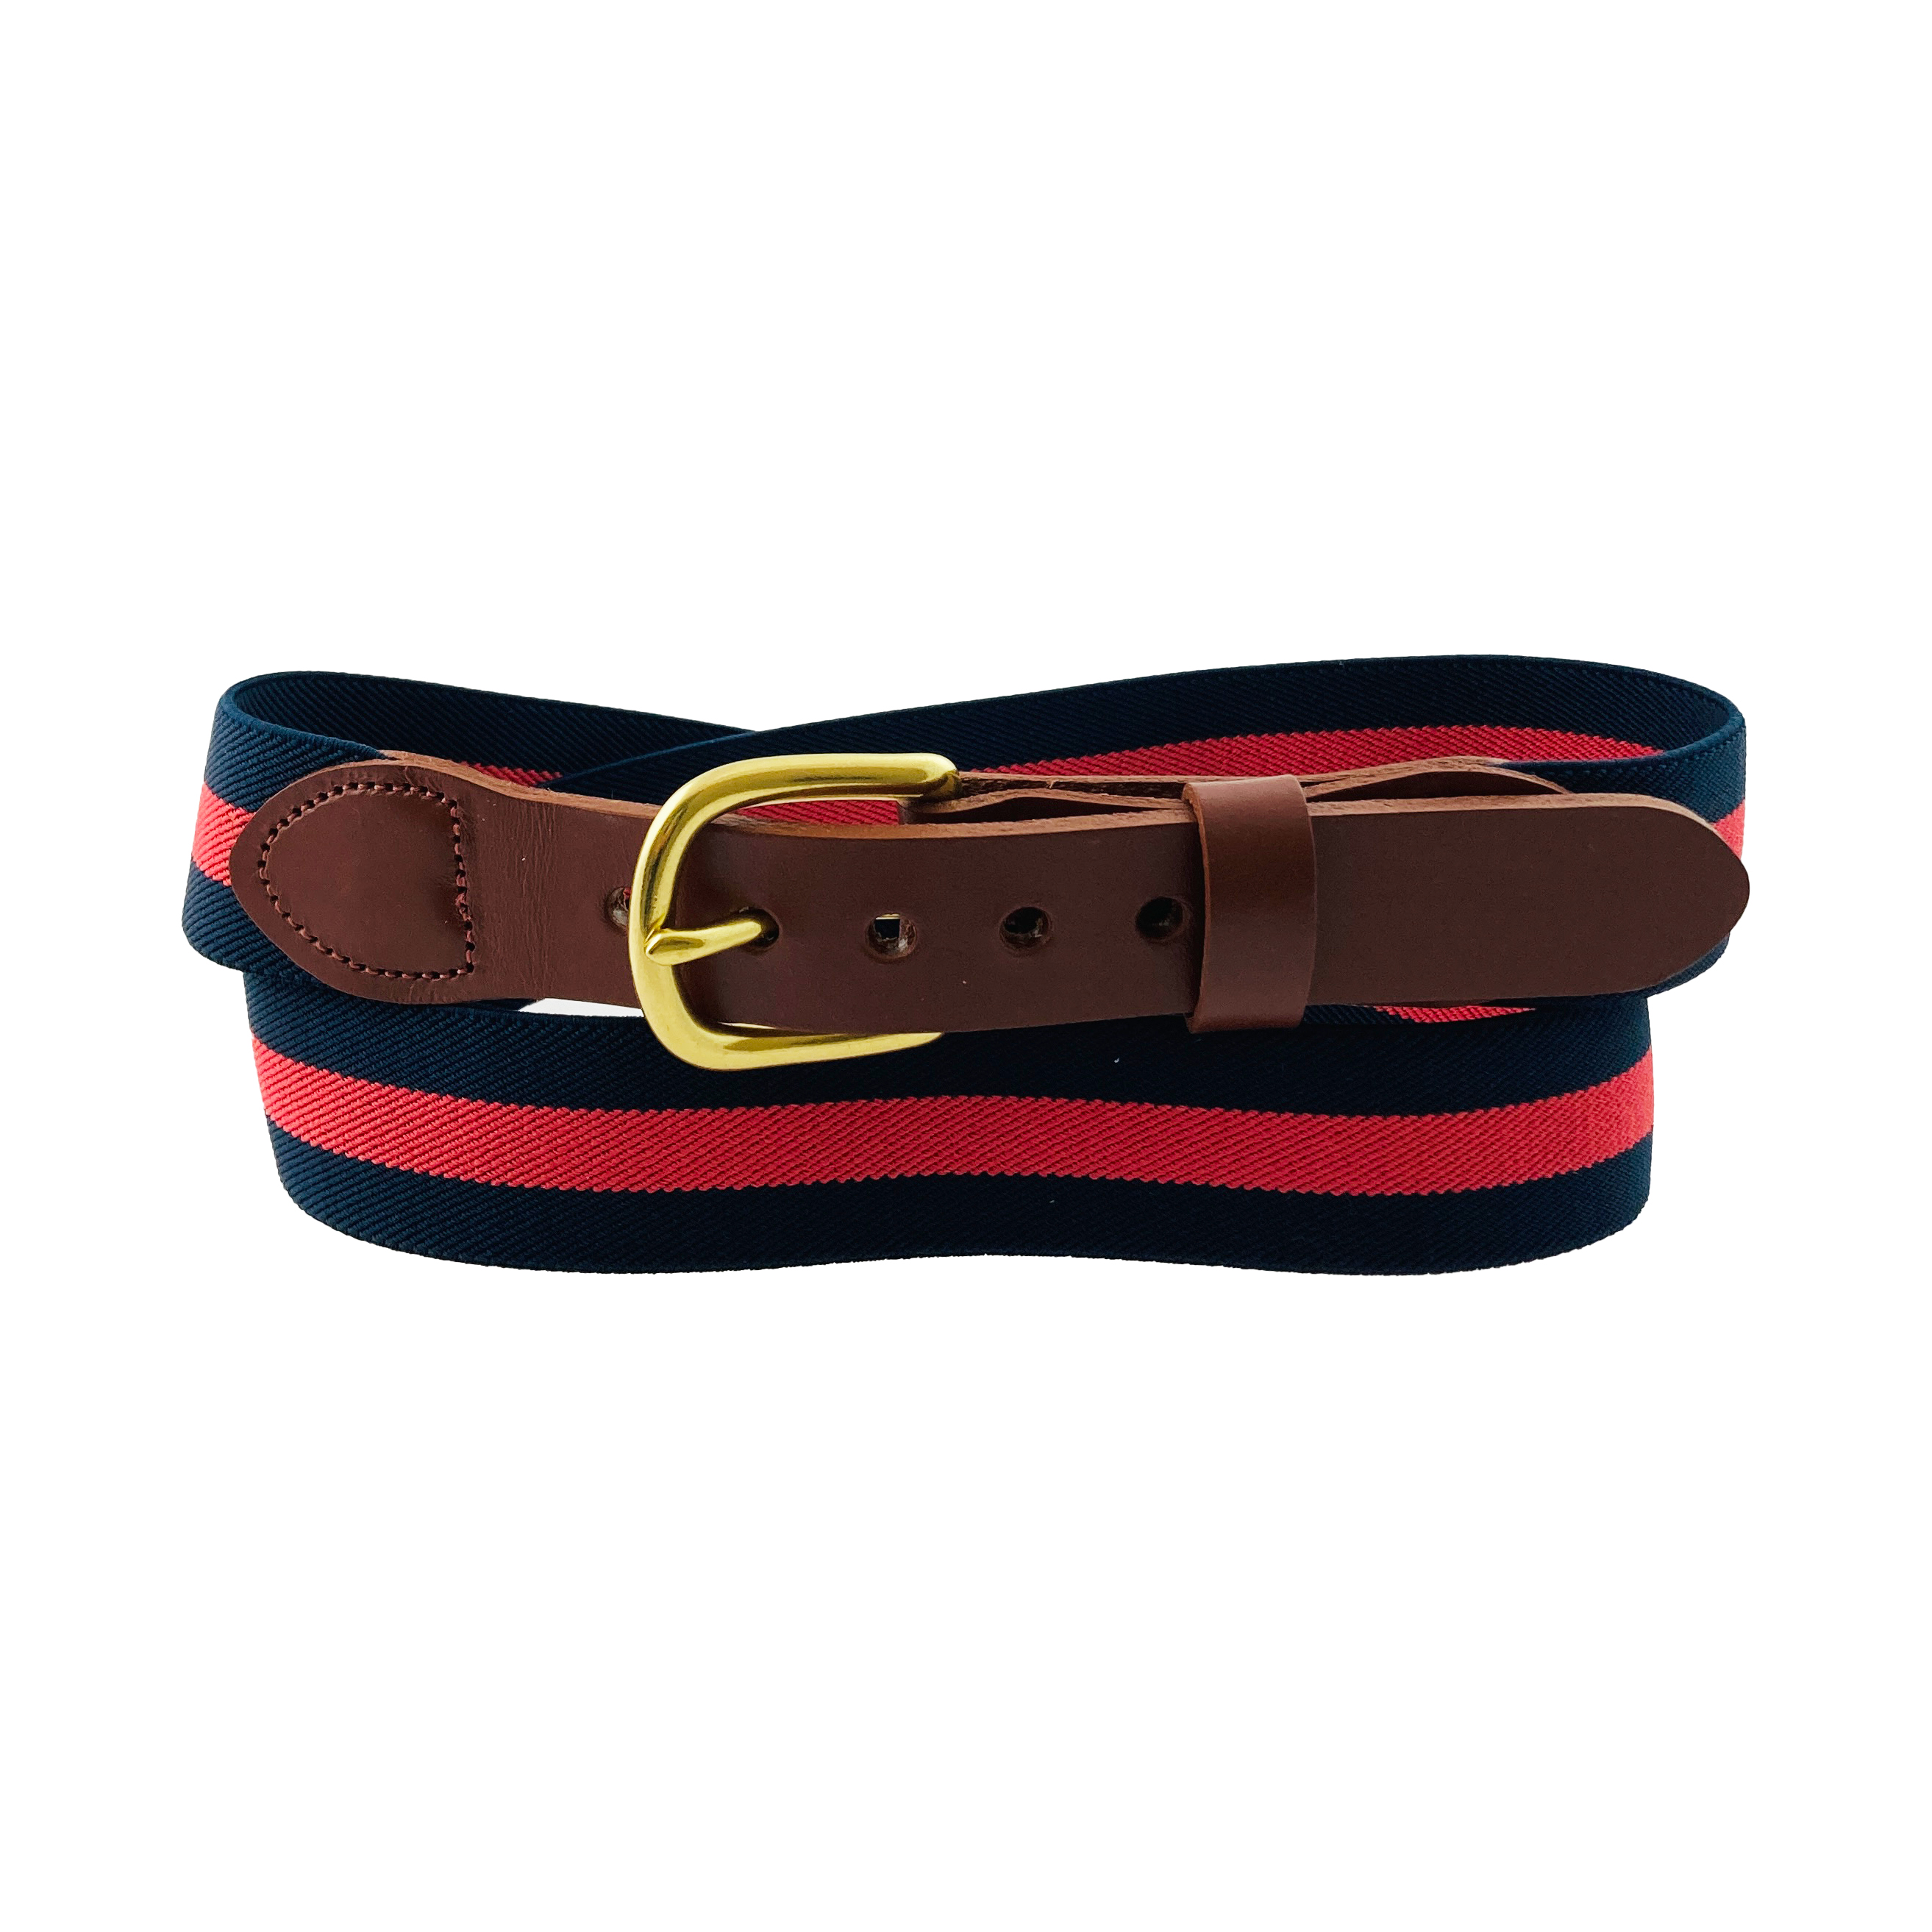 Tab & Buckle Stretch Surcingle Belt: Eliza B & Leather Man Ltd